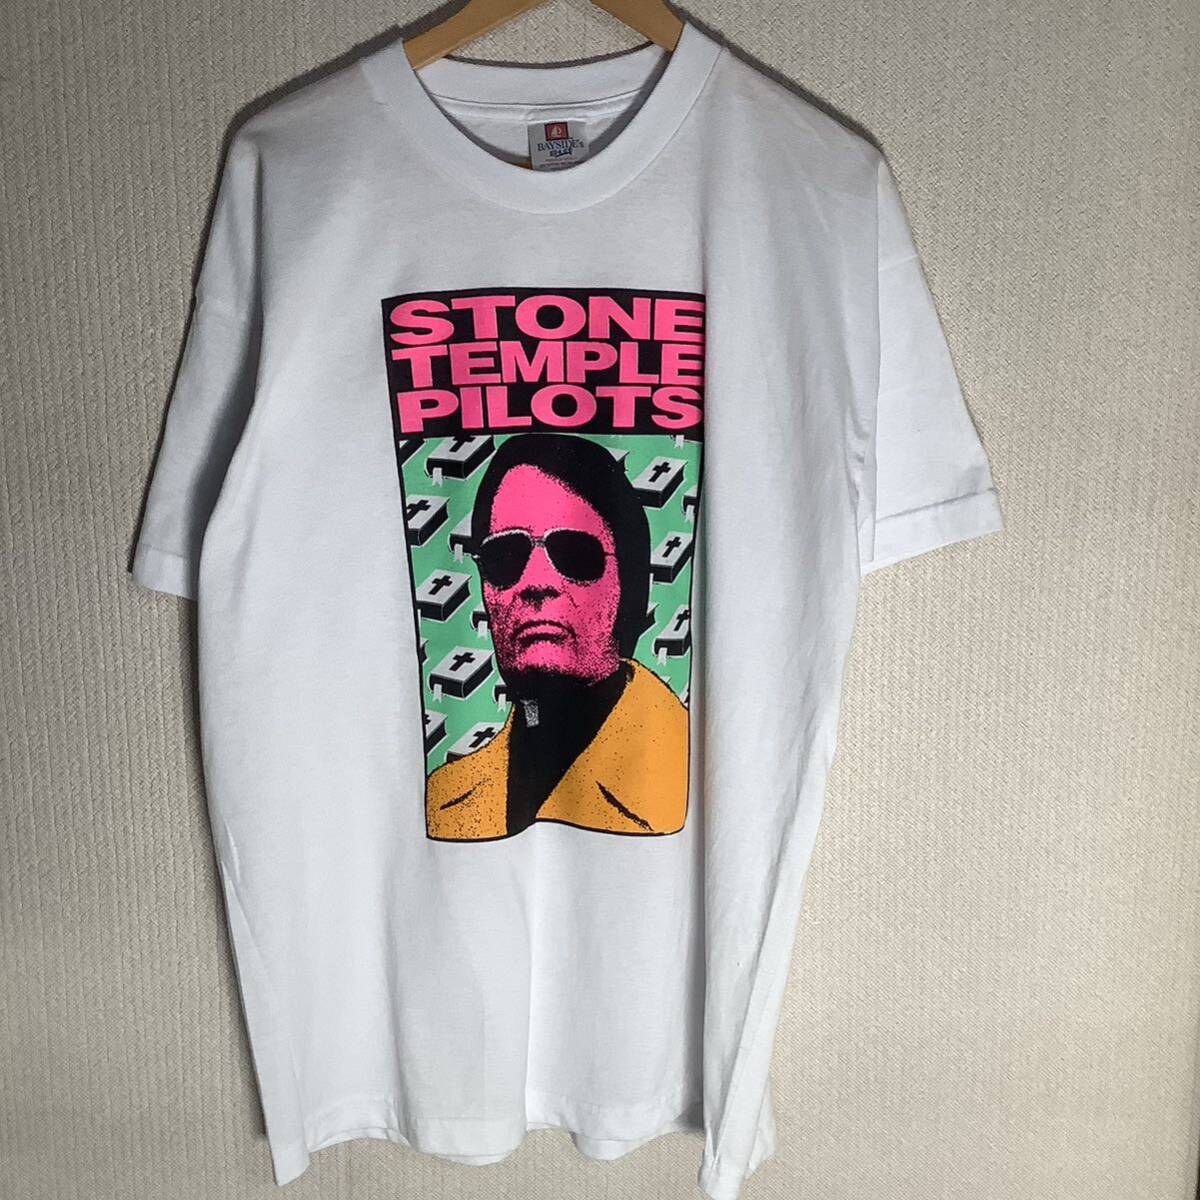  в это время было использовано 1990s STONE TEMPLE PILOTS Frank Kozik BAYSIDE\'s производства размер XL Vintage футболка 80s 90s Британия блокировка частота 